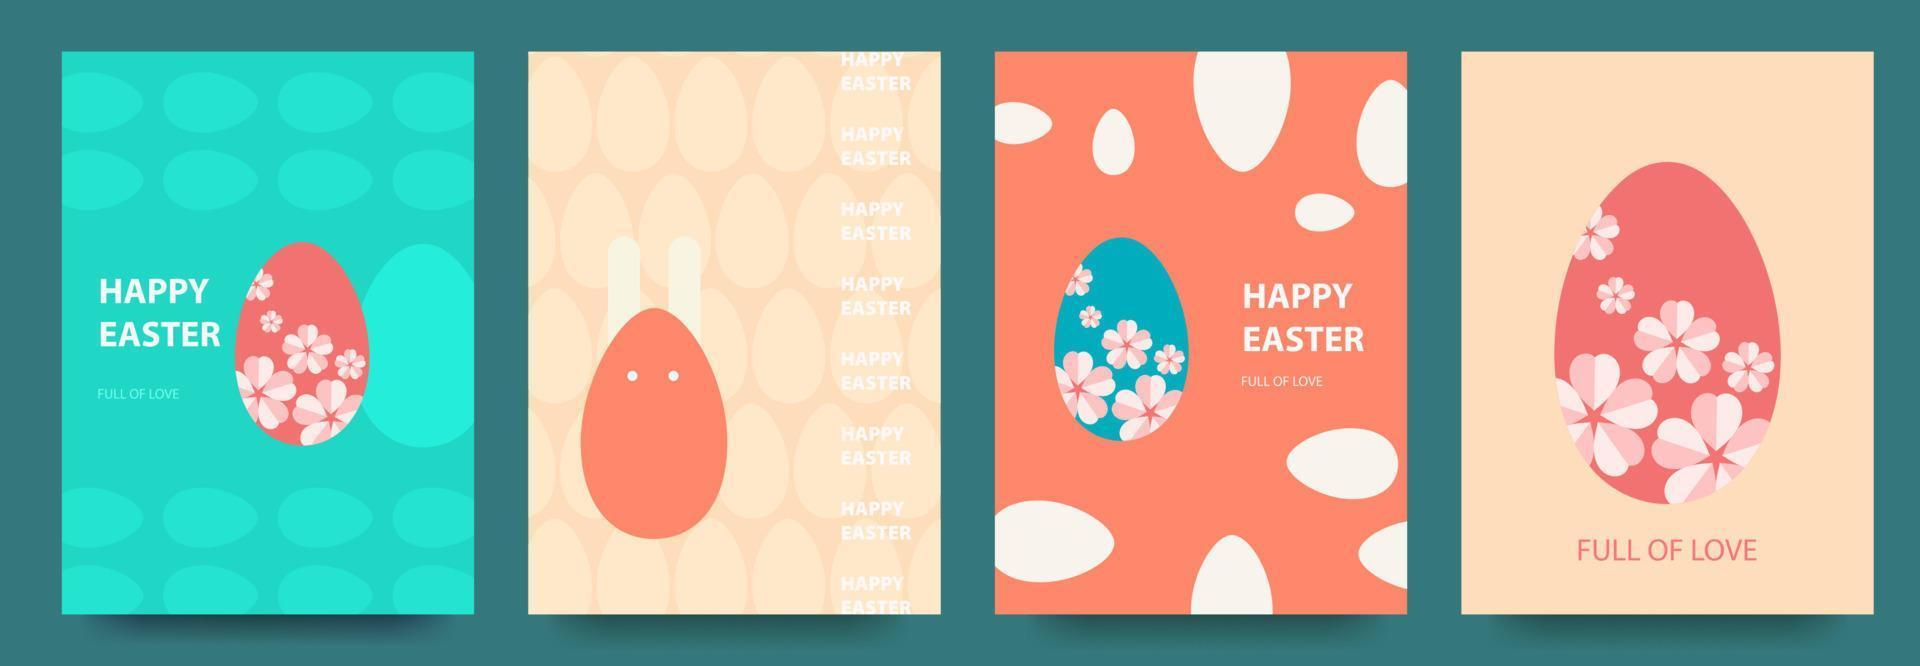 contento Pascua de Resurrección conjunto de vector Pascua de Resurrección tarjetas con Pascua de Resurrección huevos, conejito, patrones. moderno geométrico resumen estilo.vector ilustración